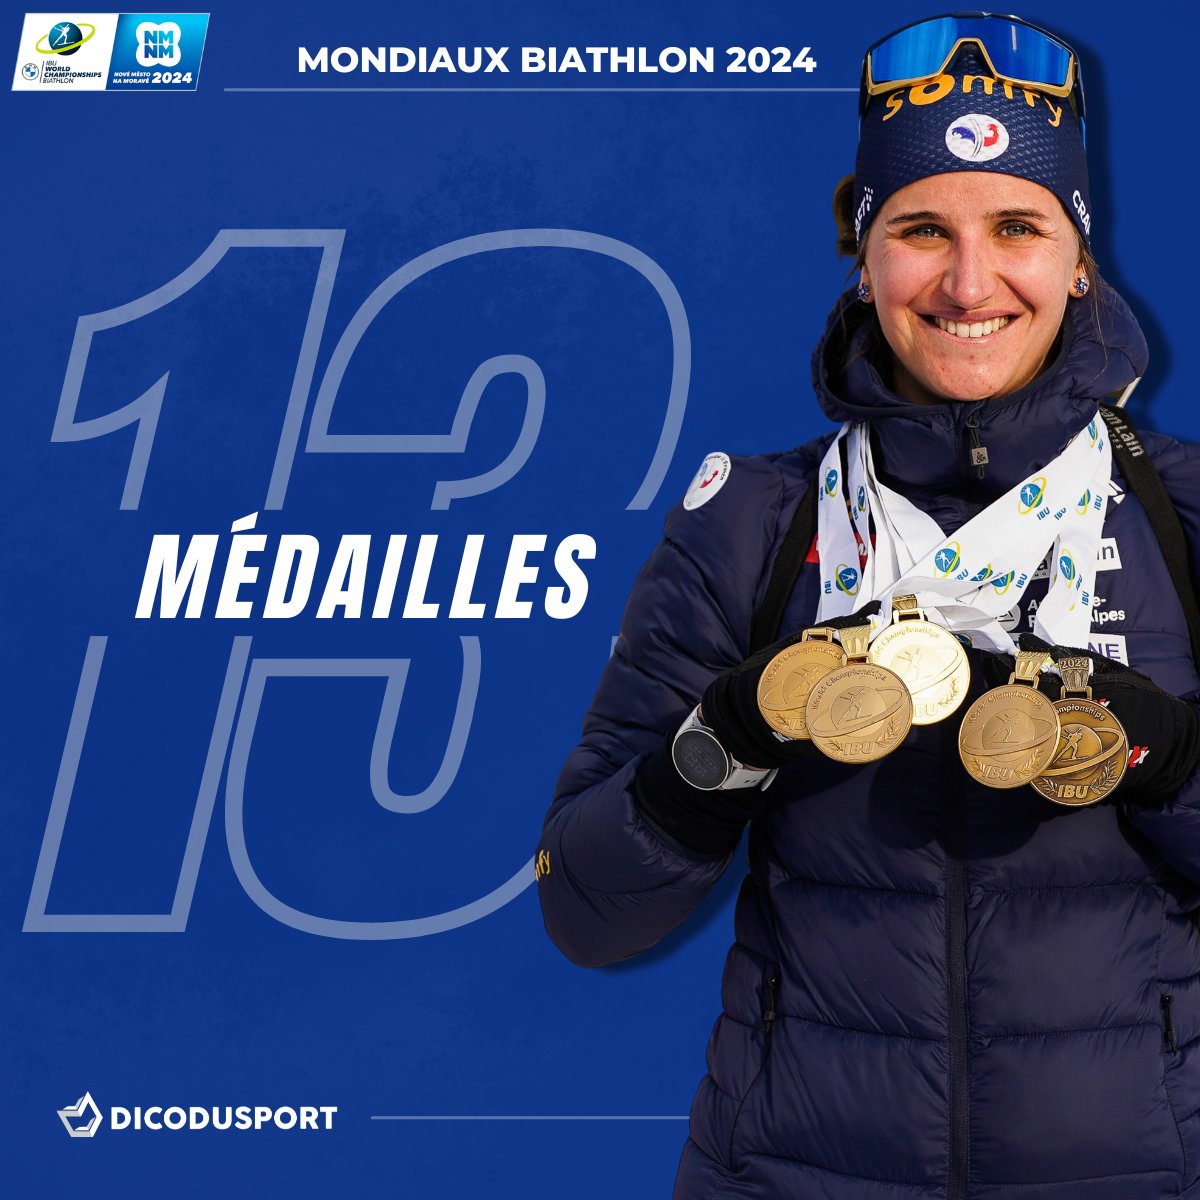 🇫🇷 𝐋𝐀 𝐅𝐑𝐀𝐍𝐂𝐄 𝐌𝐄𝐈𝐋𝐋𝐄𝐔𝐑𝐄 𝐍𝐀𝐓𝐈𝐎𝐍 𝐃𝐄𝐒 𝐌𝐎𝐍𝐃𝐈𝐀𝐔𝐗 𝐃𝐄 𝐁𝐈𝐀𝐓𝐇𝐋𝐎𝐍 ! 😍

L'équipe de France bat son record de récompenses (13) sur des Mondiaux et termine première nation au tableau des médailles ! 👉 vu.fr/qTAvU

#NMNM24 #Biathlon